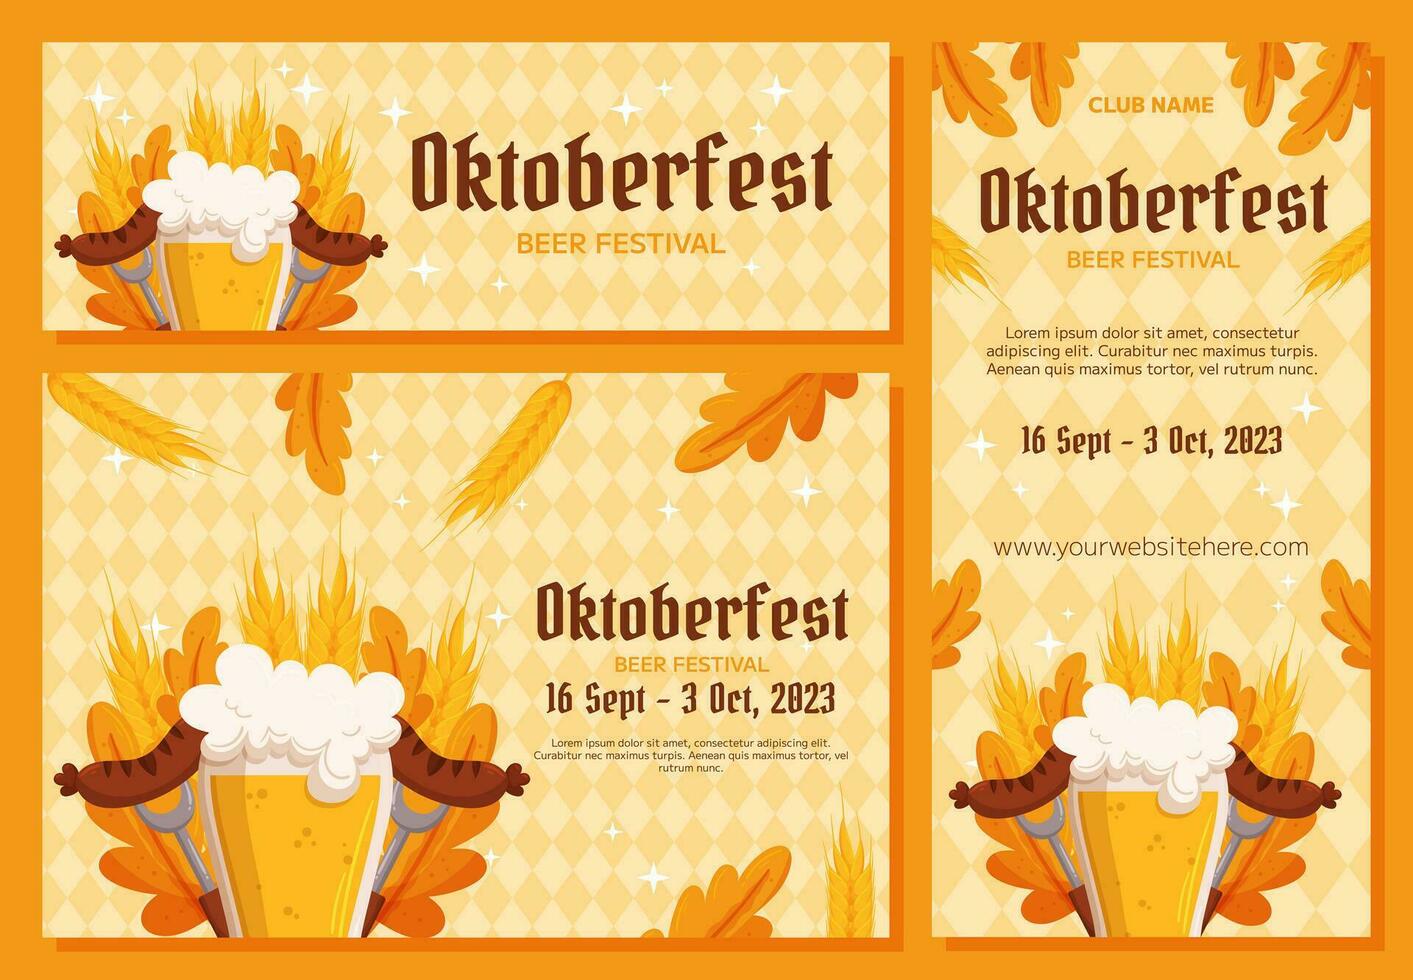 oktoberfeest Duitse bier festival achtergrond, verticaal en horizontaal banier verzameling. ontwerp met glas van bier, vorken met gegrild worst, tarwe en bladeren. licht geel ruit patroon vector